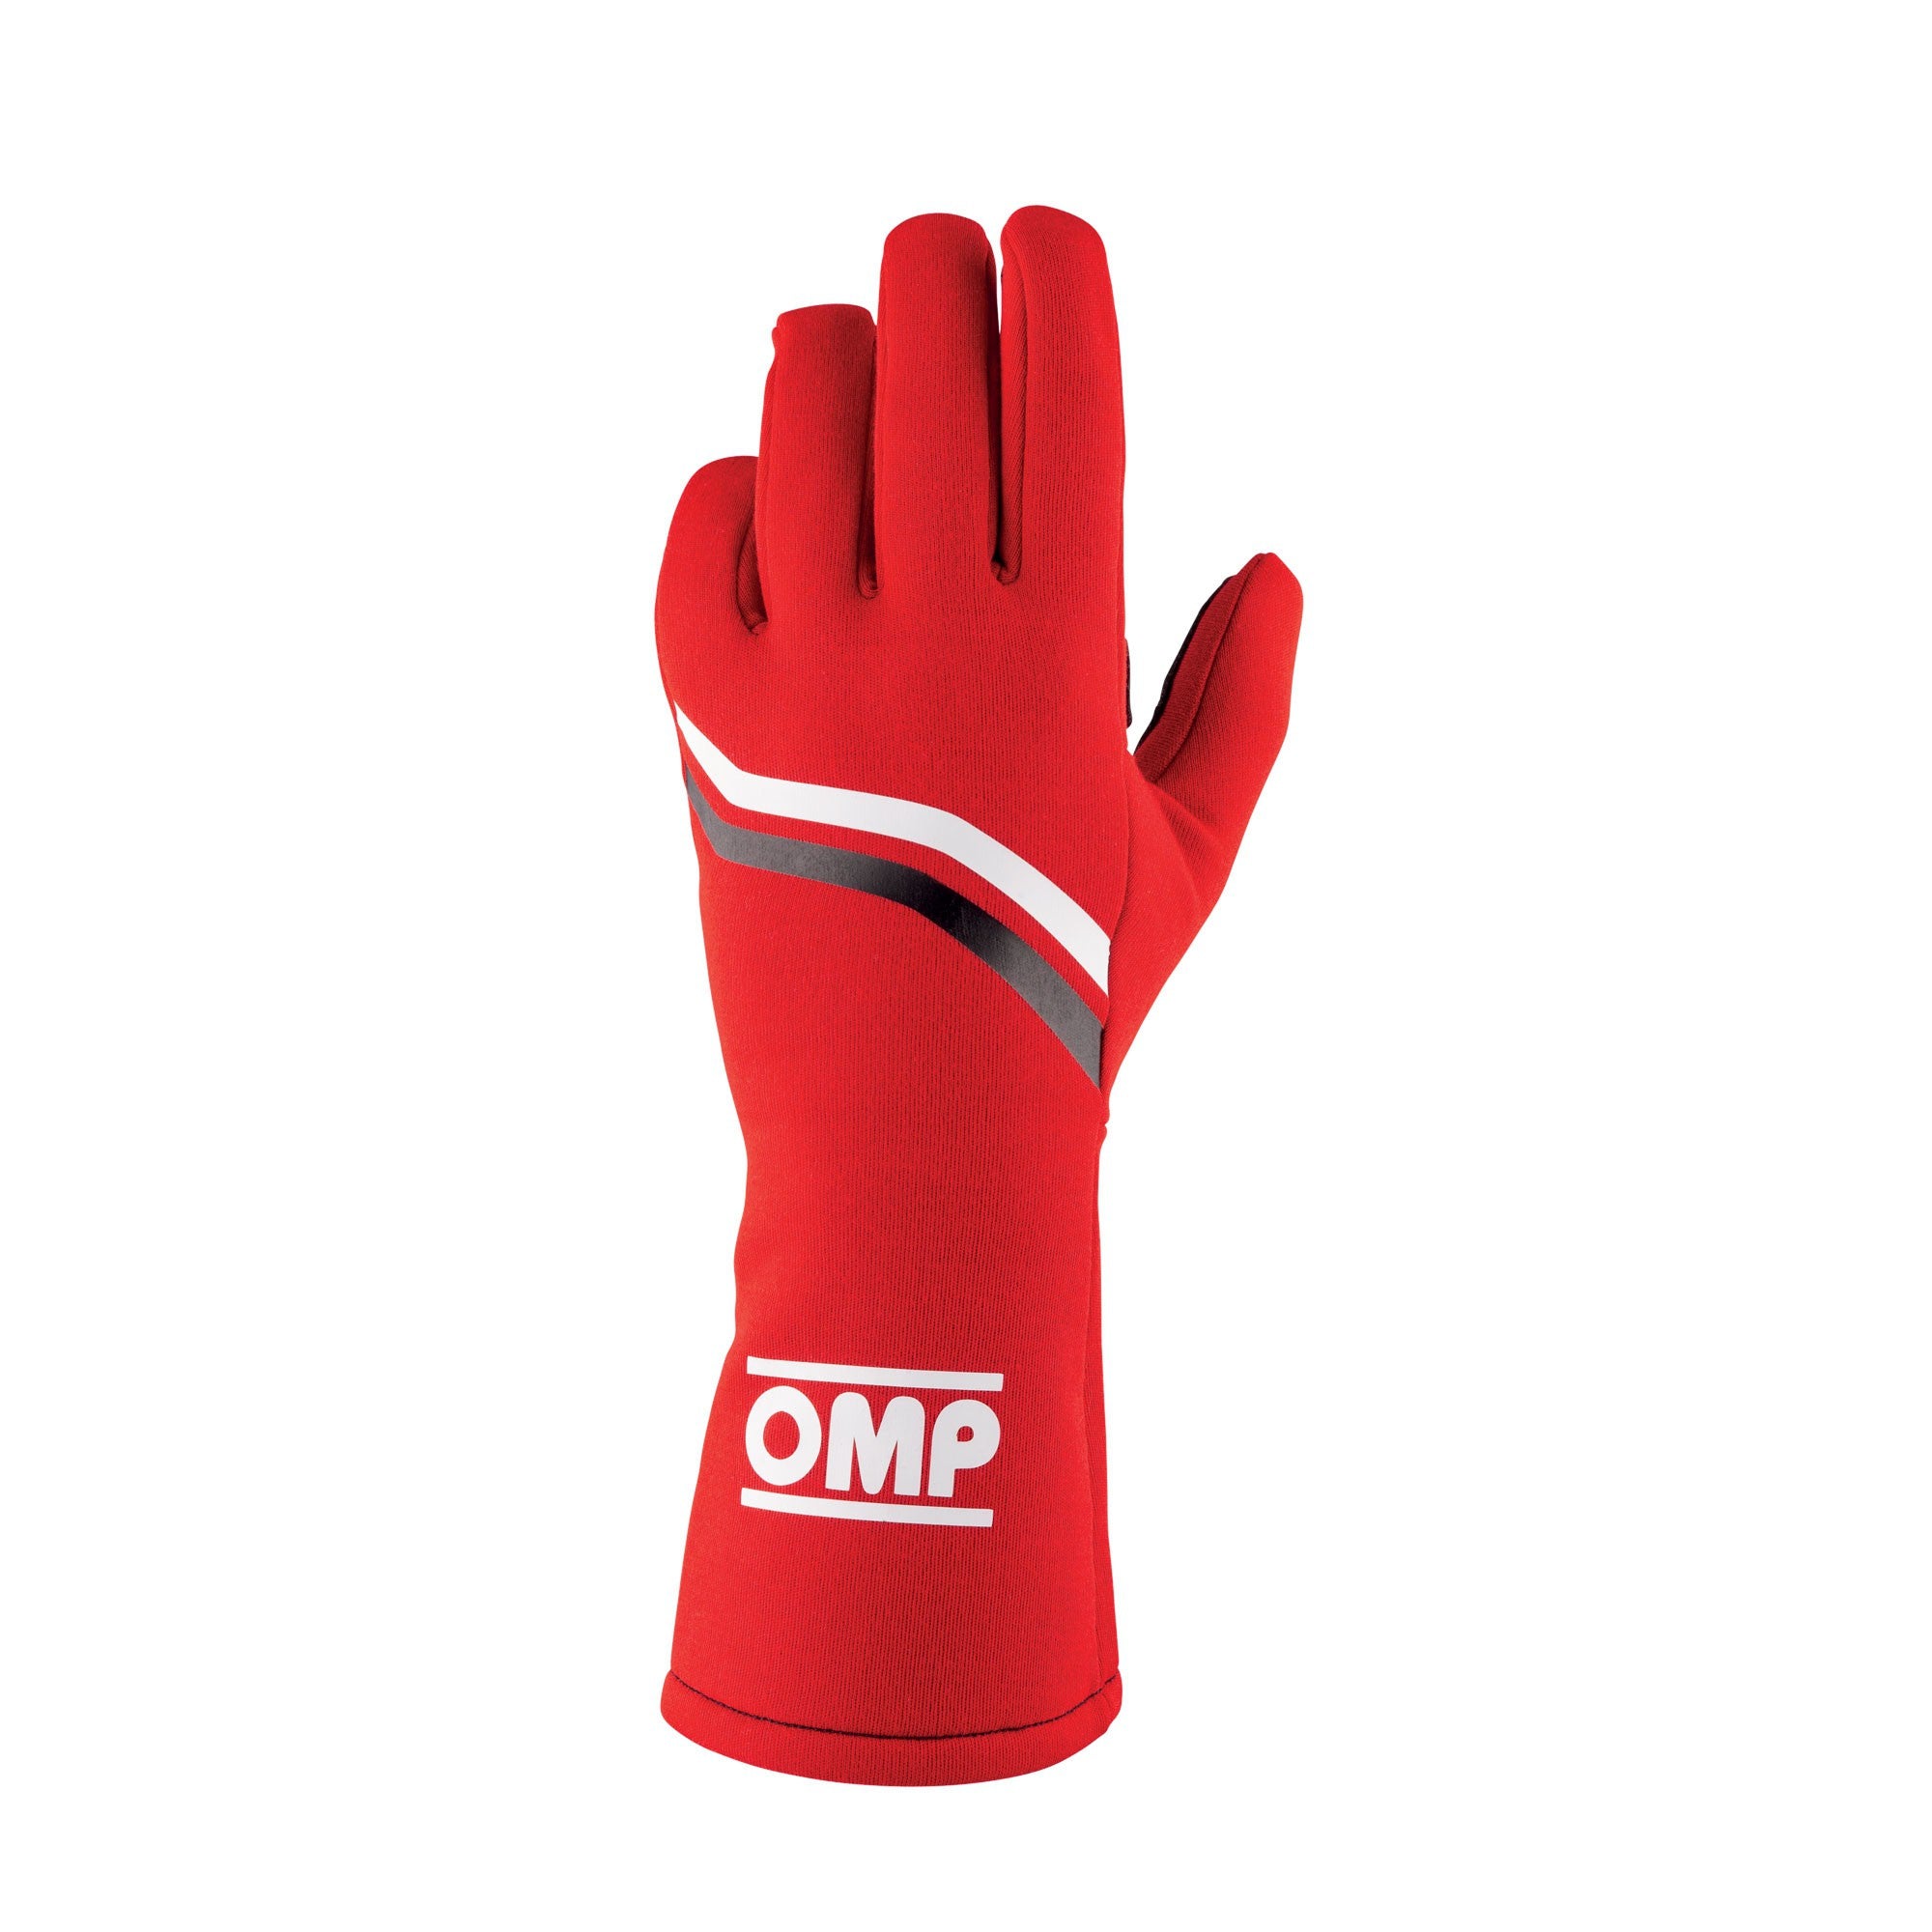 OMP Dijon Glove